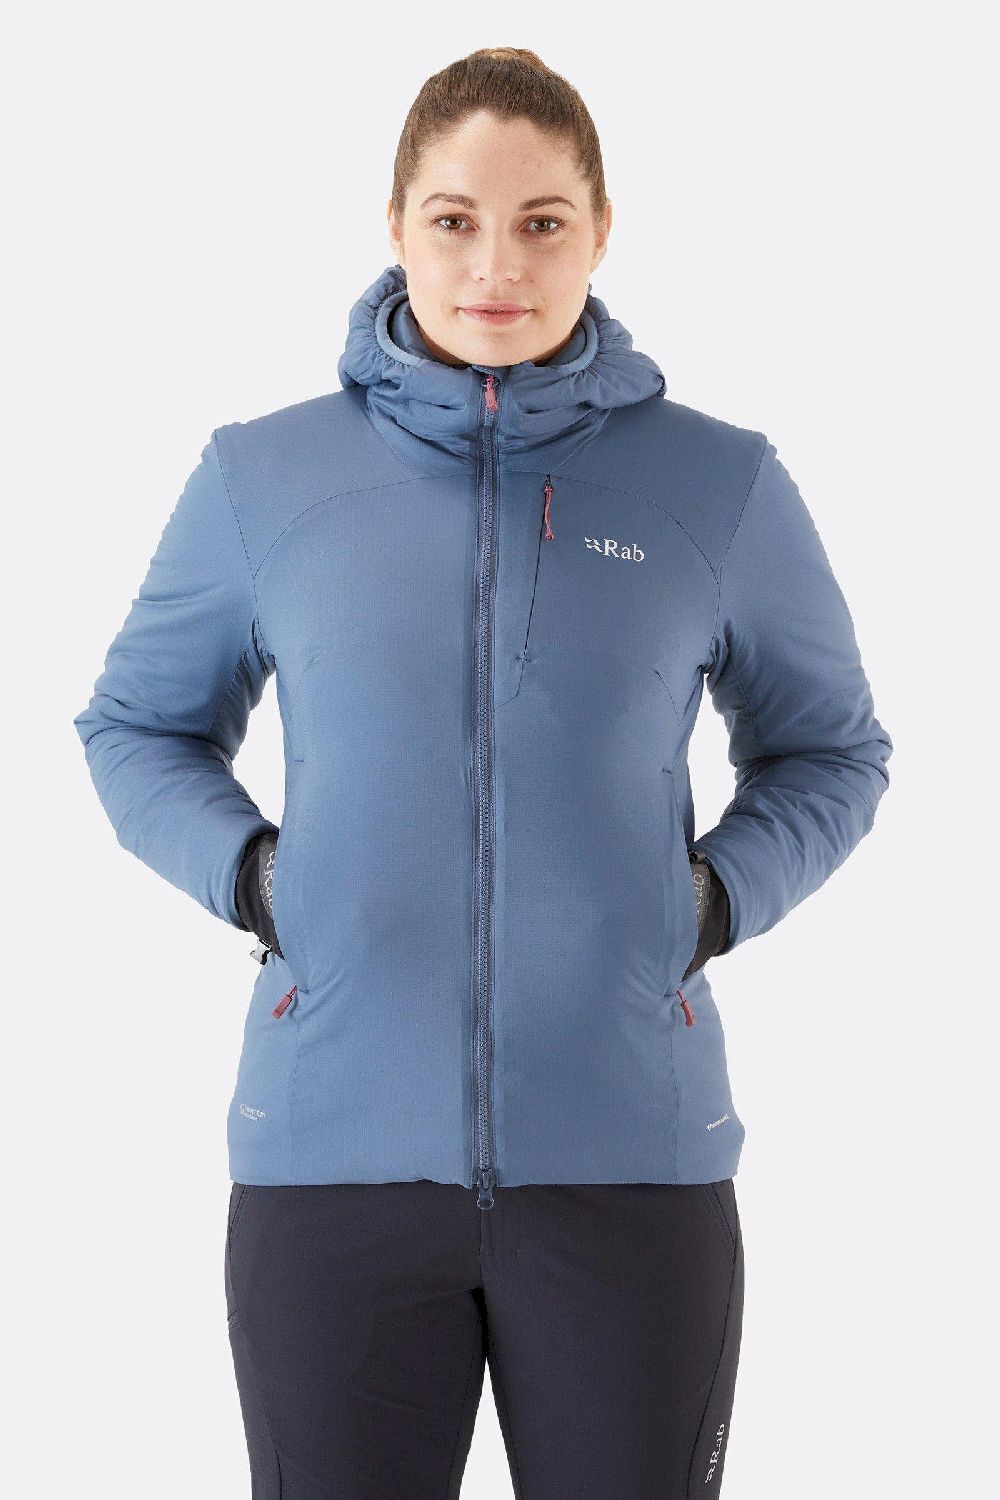 Rab Xenair Alpine Jacket - Laskettelutakki - Naiset